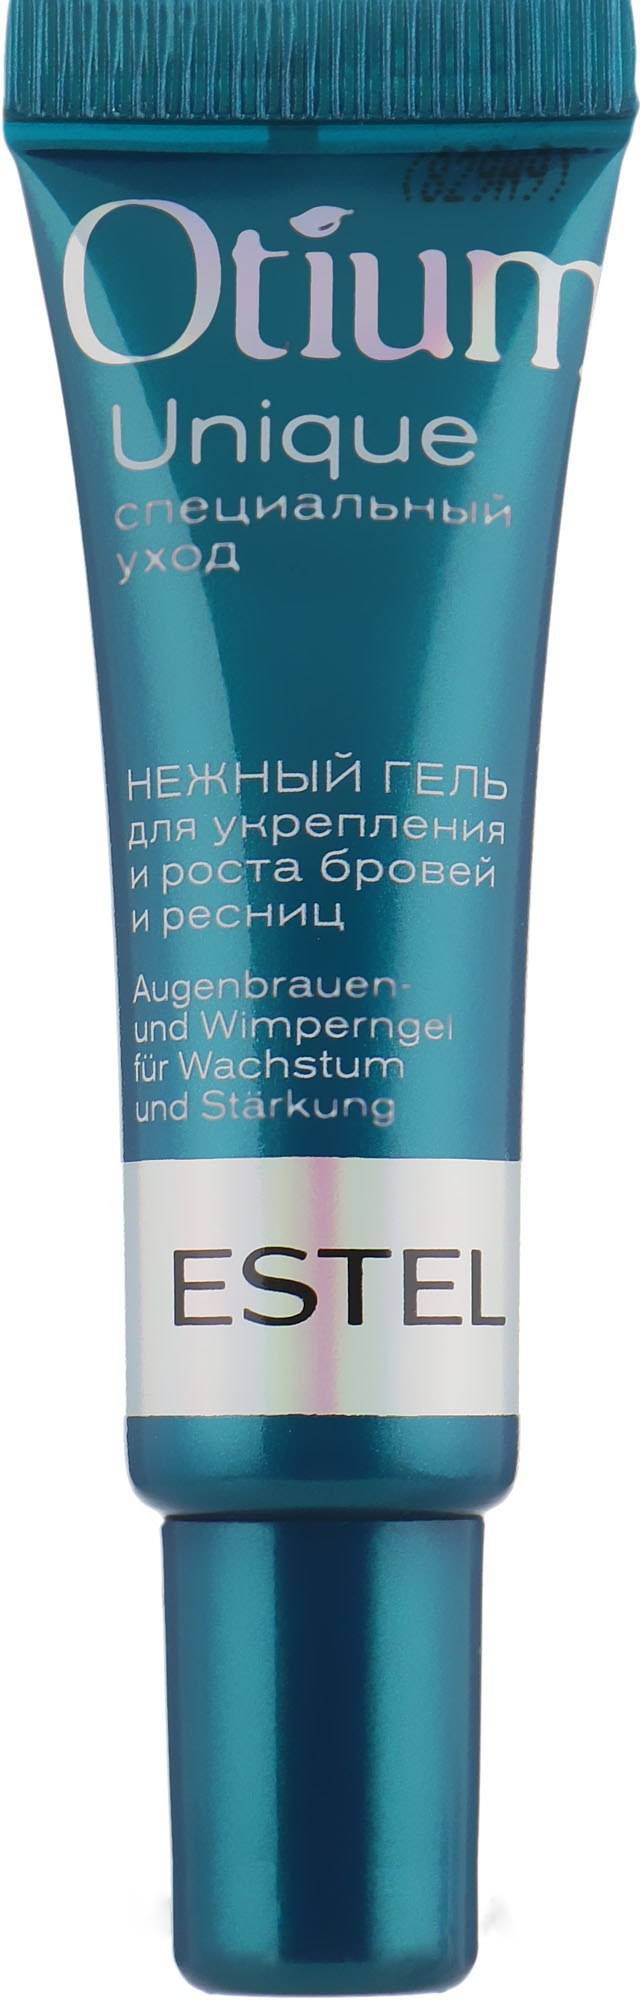 Нежный гель для укрепления и роста ресниц Estel Professional Otium Unique, 7 ml